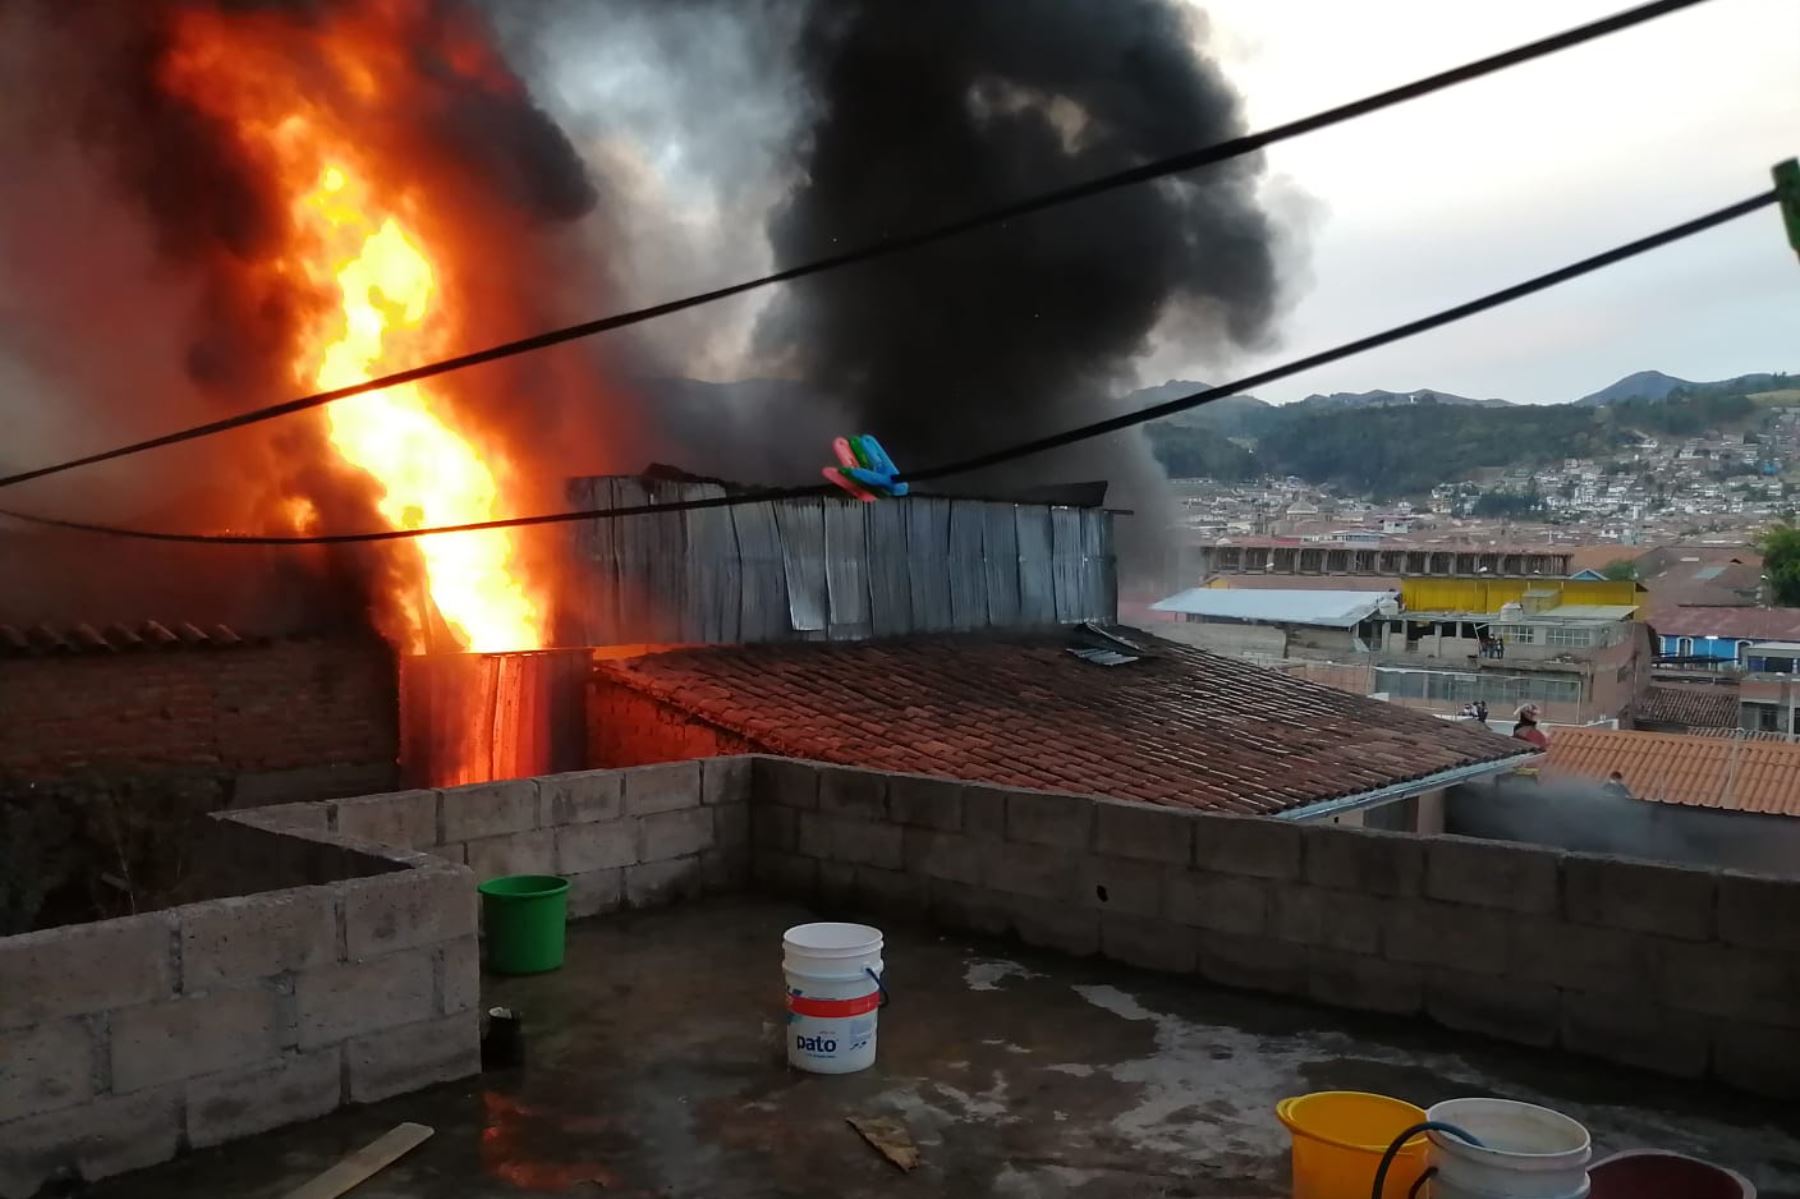 Un incendio de grandes proporciones, destruye , al menos cuatro viviendas en la prolongación de la Av. Del Ejército de la ciudad del Cusco. Los bomberos, policías y voluntarios intentan controlar el incendio.
Foto: Andina/ Percy Hurtado